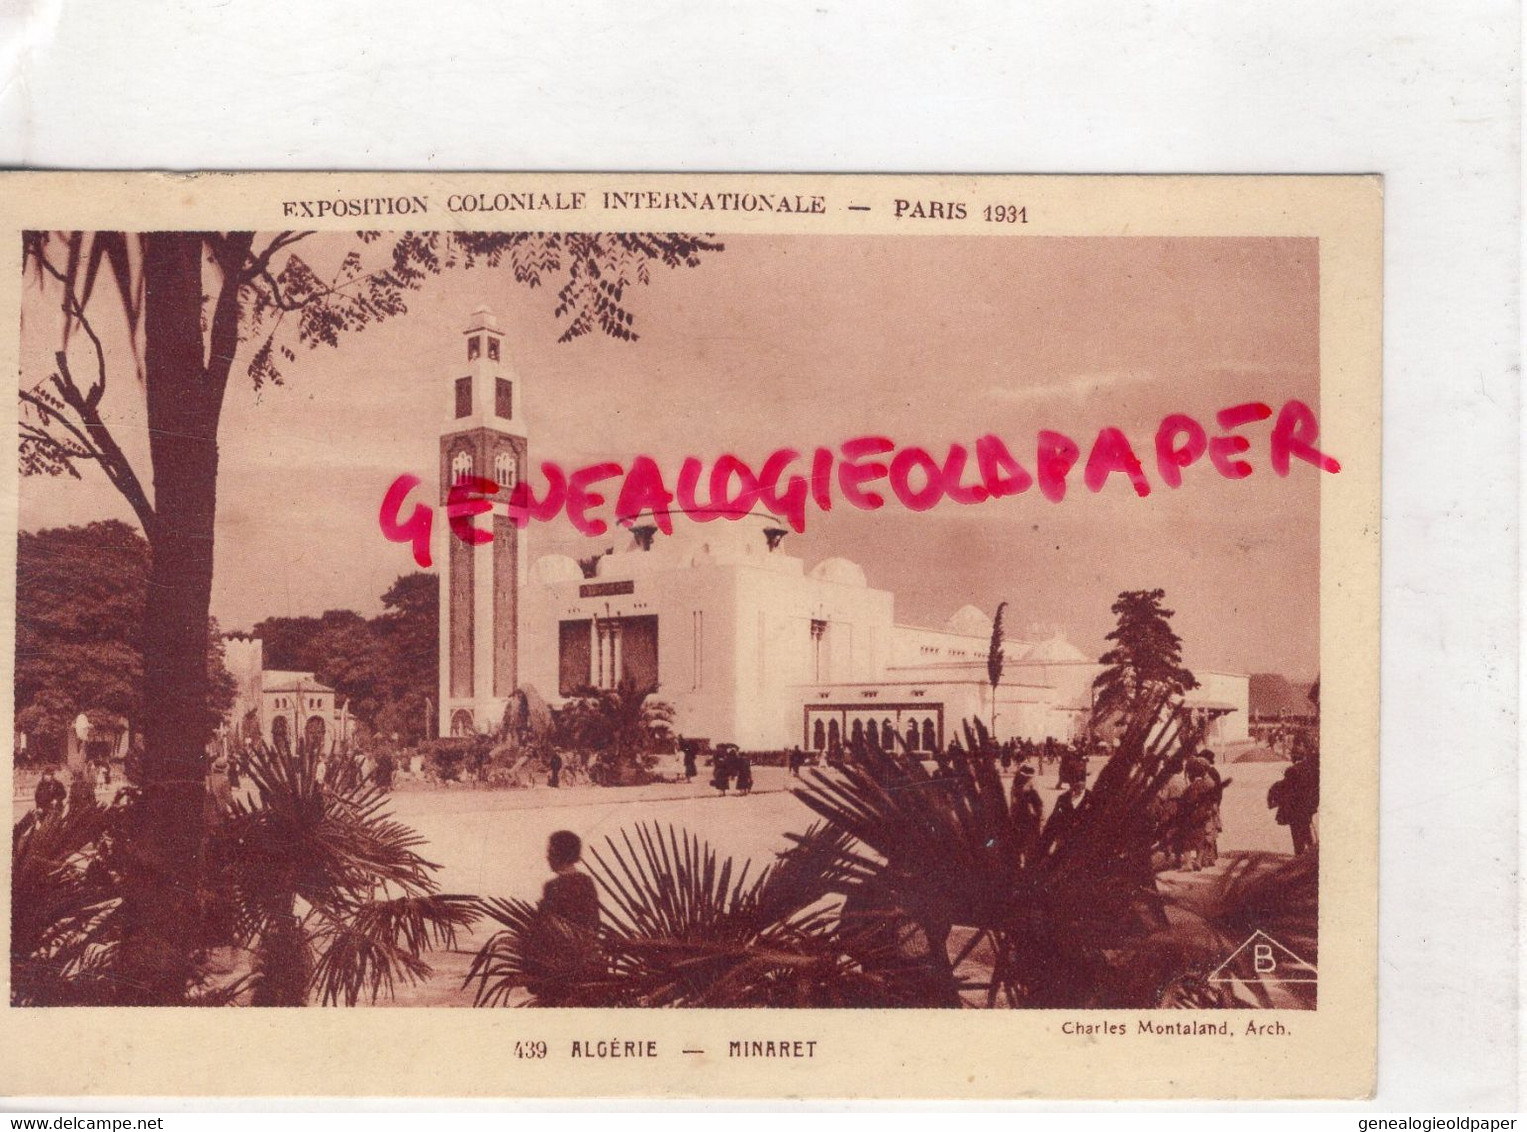 ALGERIE- MINARET  EXPOSITION COLONIALE INTERNATIONALE PARIS 1931 - Ouargla